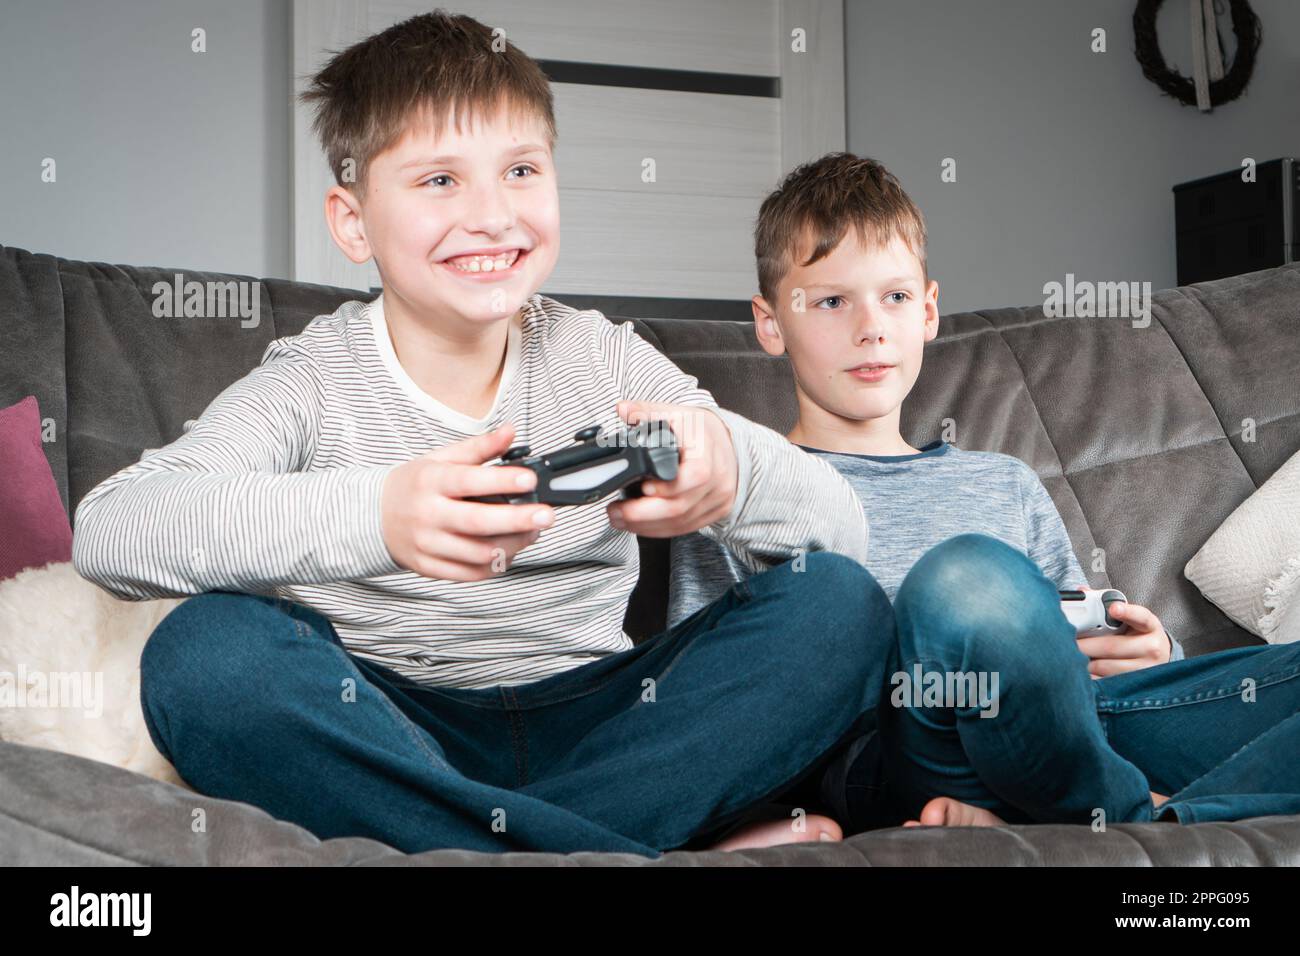 Porträt von zwei glücklichen Teenagern, die zu Hause auf einem grauen Sofa sitzen, den Joystick des Gaming-Controllers halten und Videospiele spielen. Stockfoto